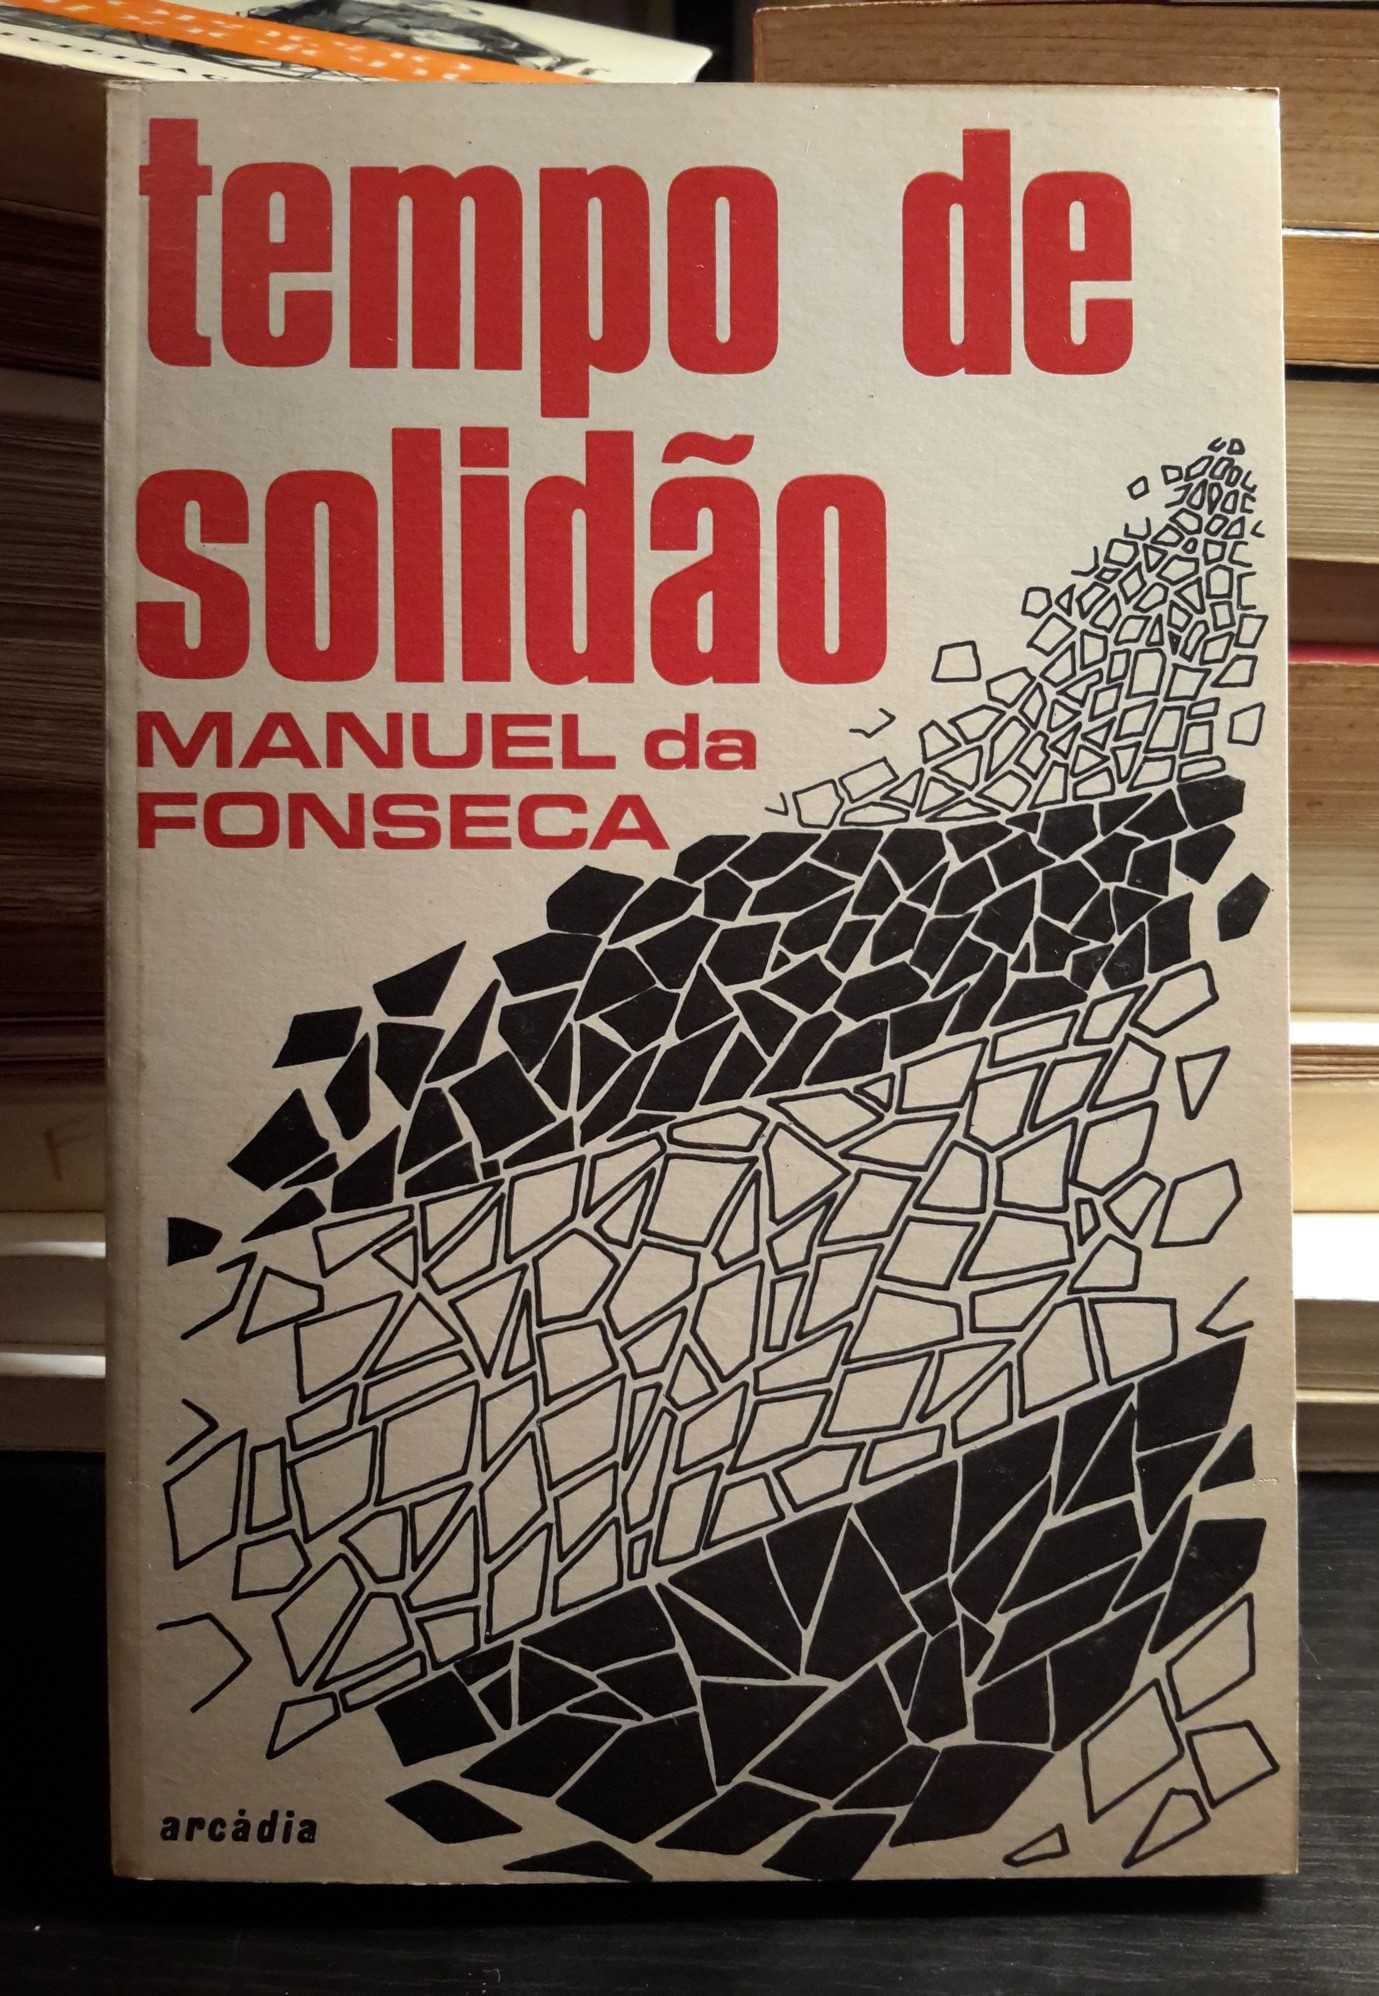 Manuel da Fonseca - Tempo de Solidão